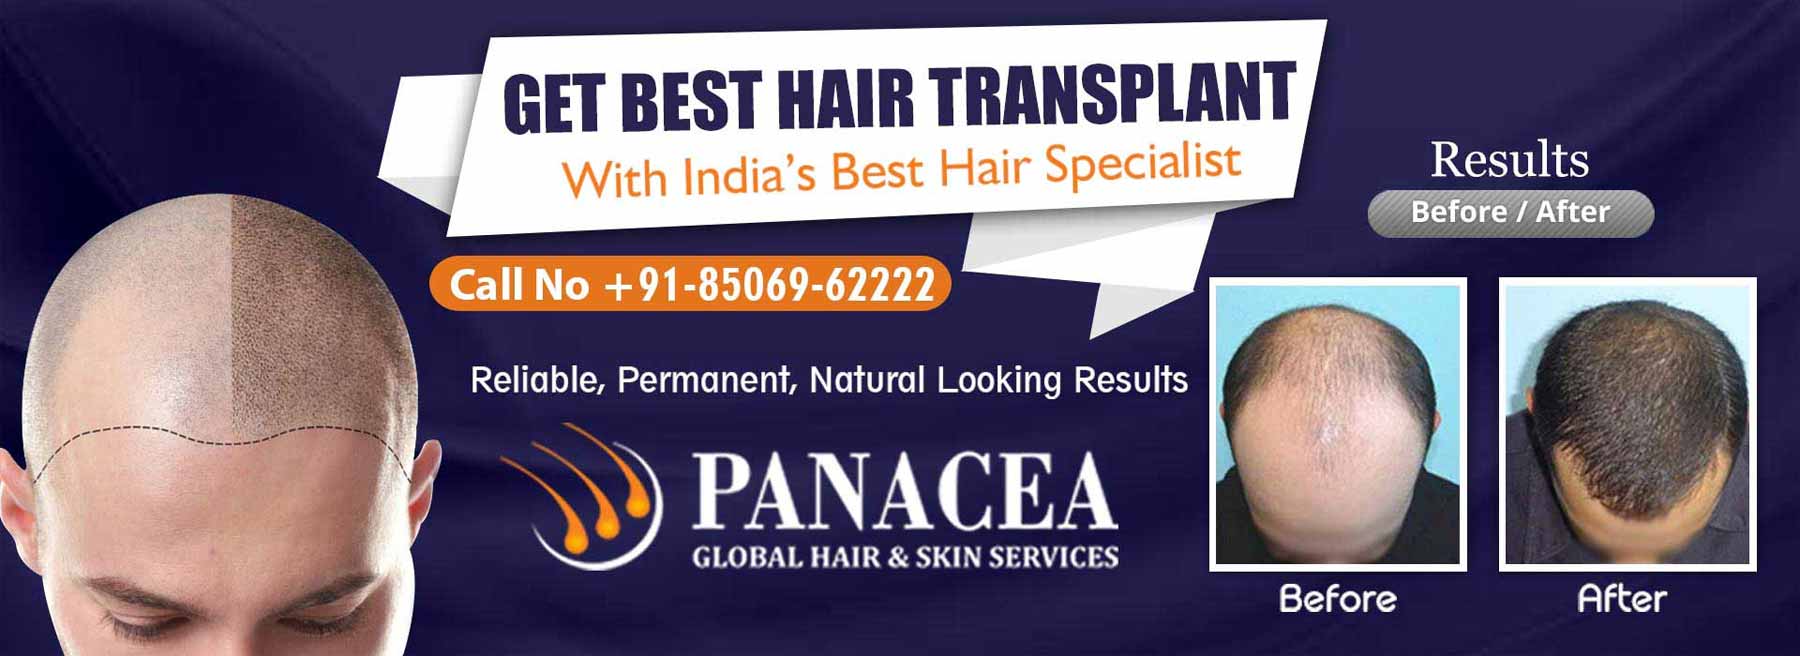 Get Best Hair Transplant - Panacea Global in Delhi